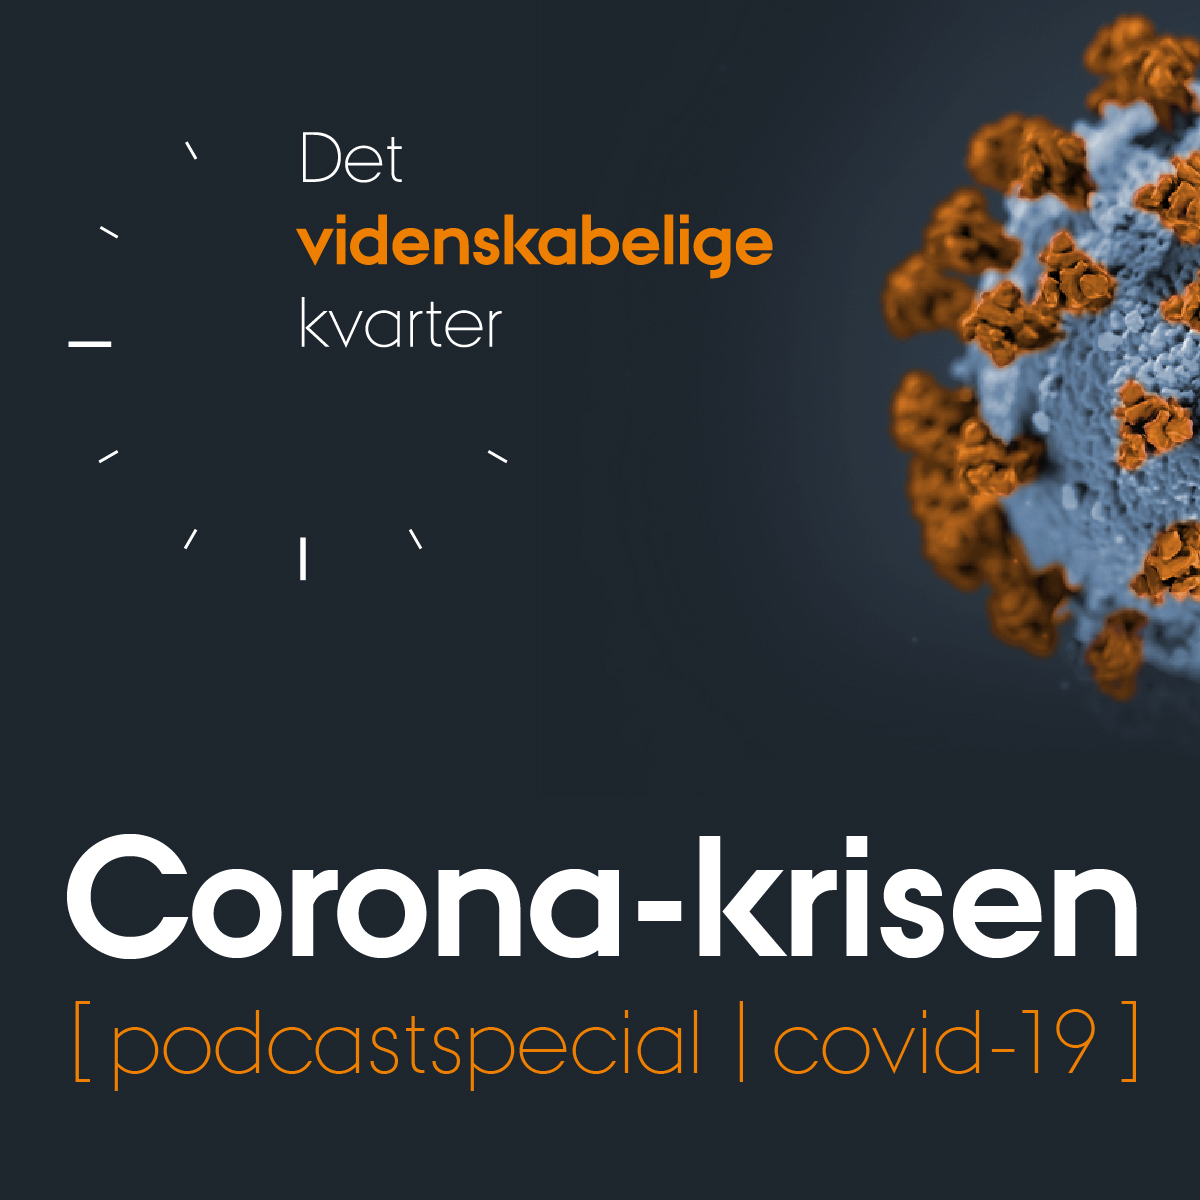 Podcastserie om coronakrisen fra Det Videnskabelige Kvarter på Aarhus BSS